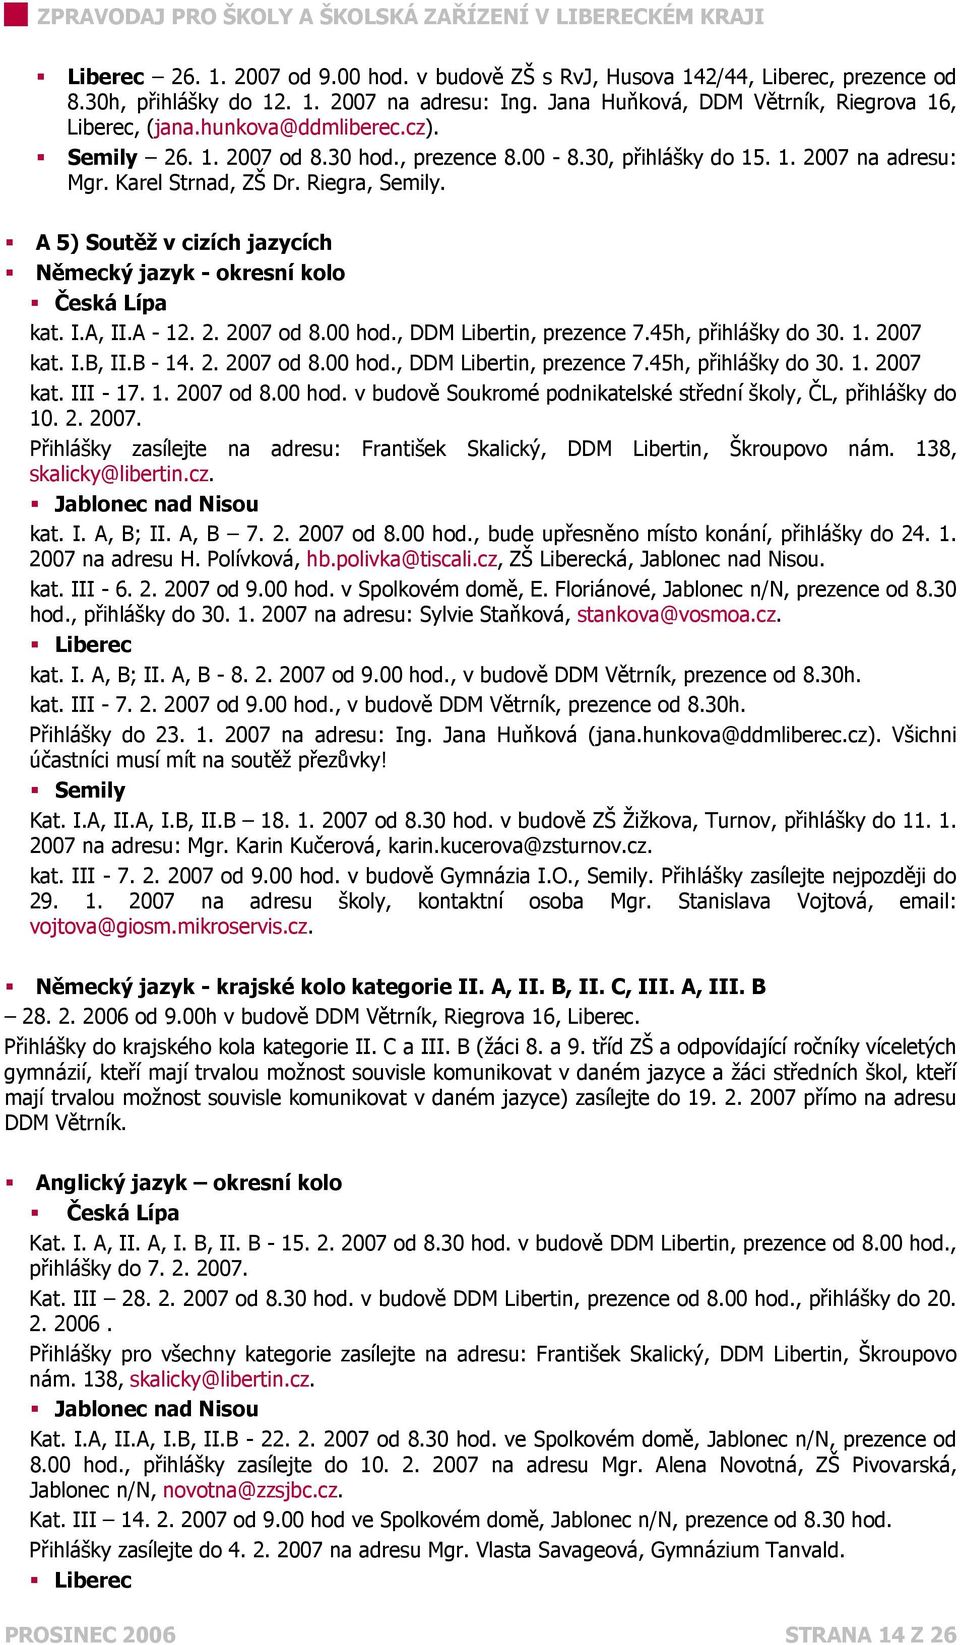 A 5) Soutěž v cizích jazycích Německý jazyk - okresní kolo Česká Lípa kat. I.A, II.A - 12. 2. 2007 od 8.00 hod., DDM Libertin, prezence 7.45h, přihlášky do 30. 1. 2007 kat. I.B, II.B - 14. 2. 2007 od 8.00 hod., DDM Libertin, prezence 7.45h, přihlášky do 30. 1. 2007 kat. III - 17.